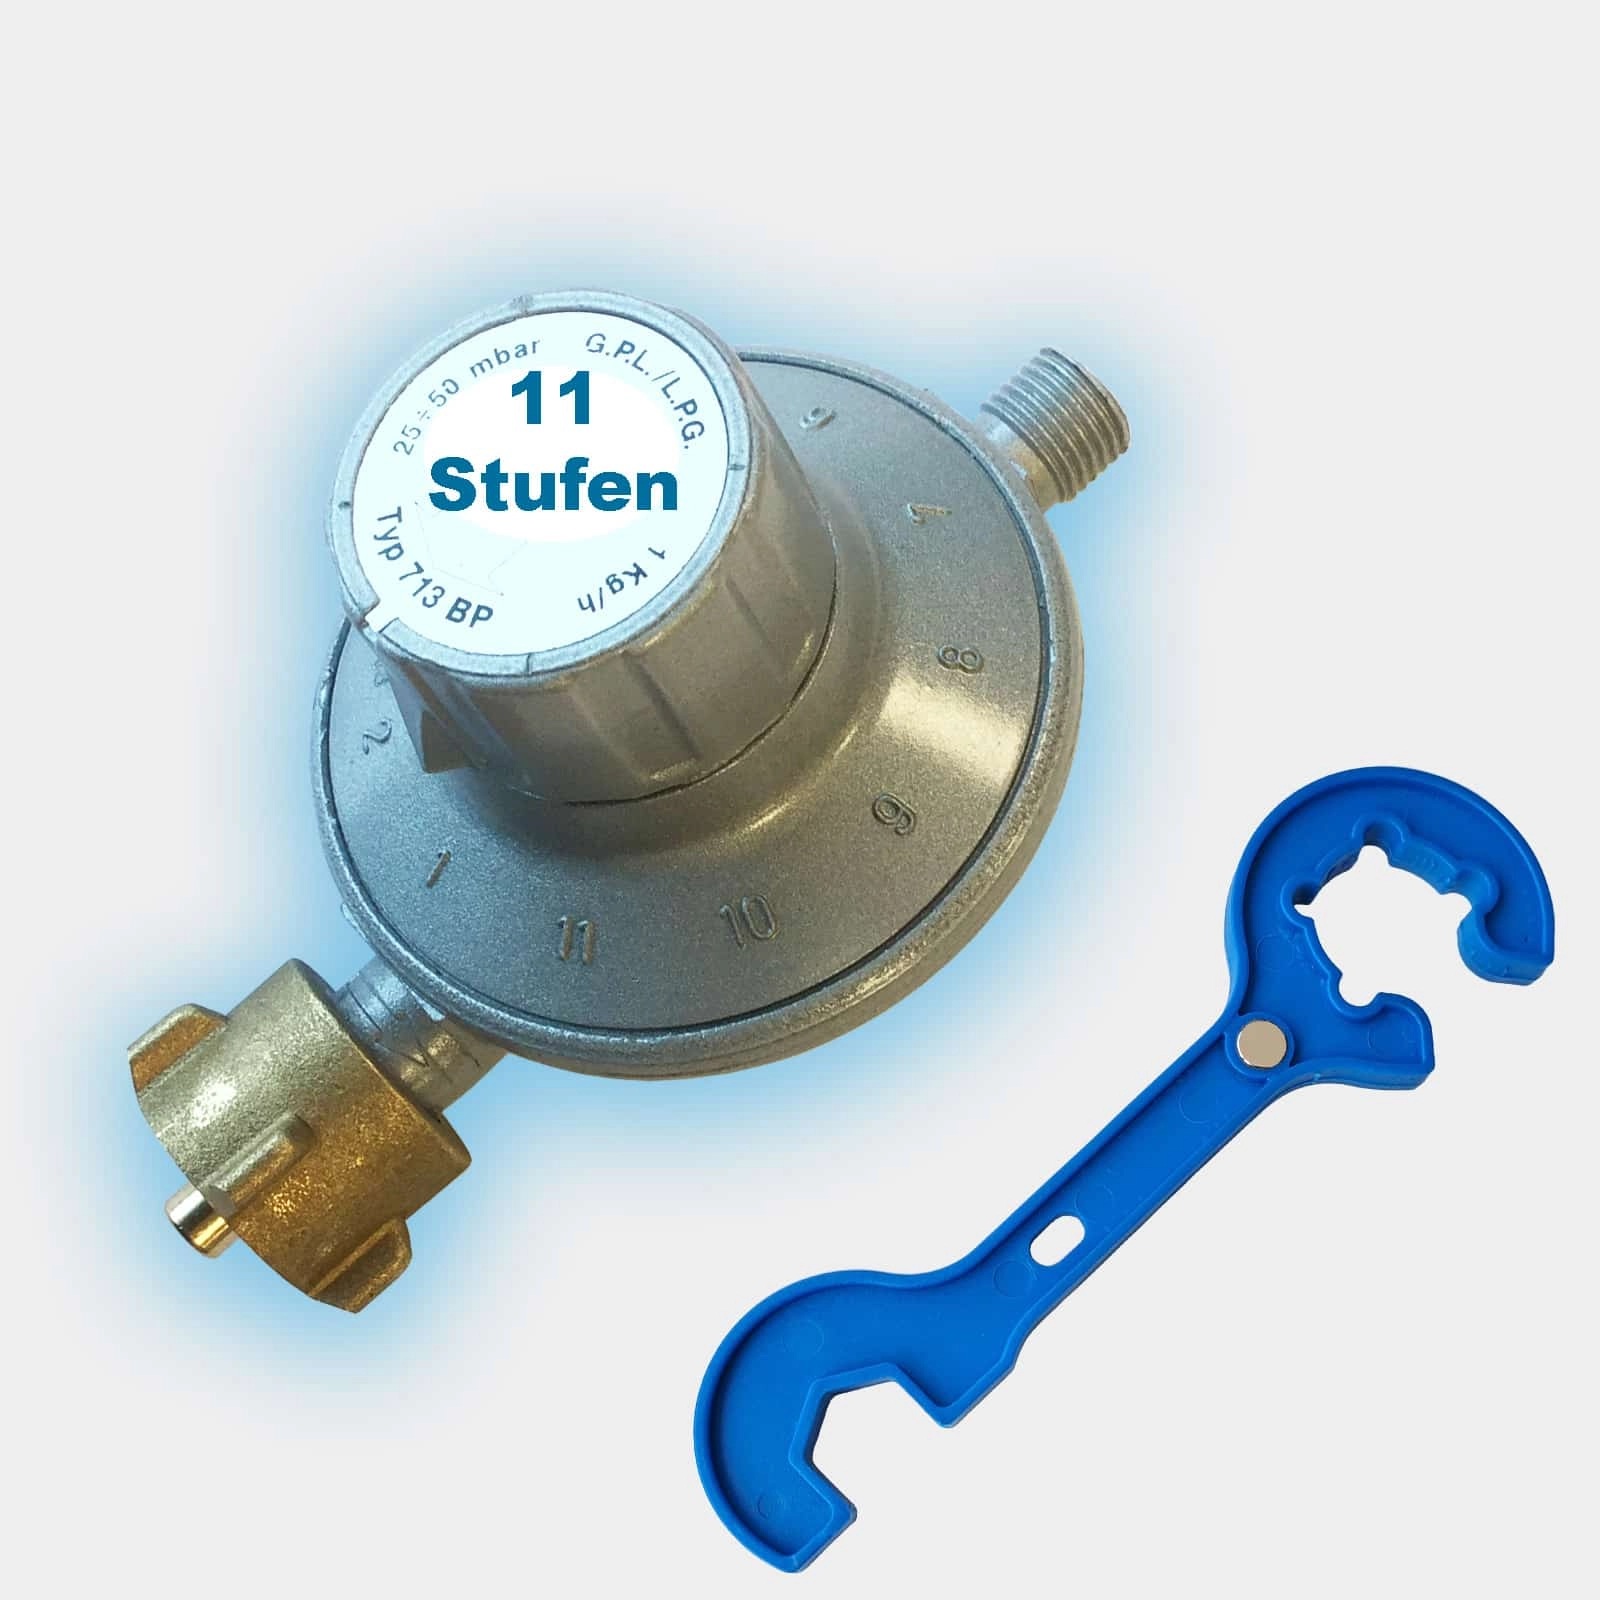 Gas-Druck-Regler 11-Stufen-Regler 25-50 mbar inkl. Gasreglerlöser mit Magnet + Schlüssel 17mm für Überwurfmutter 1/4"